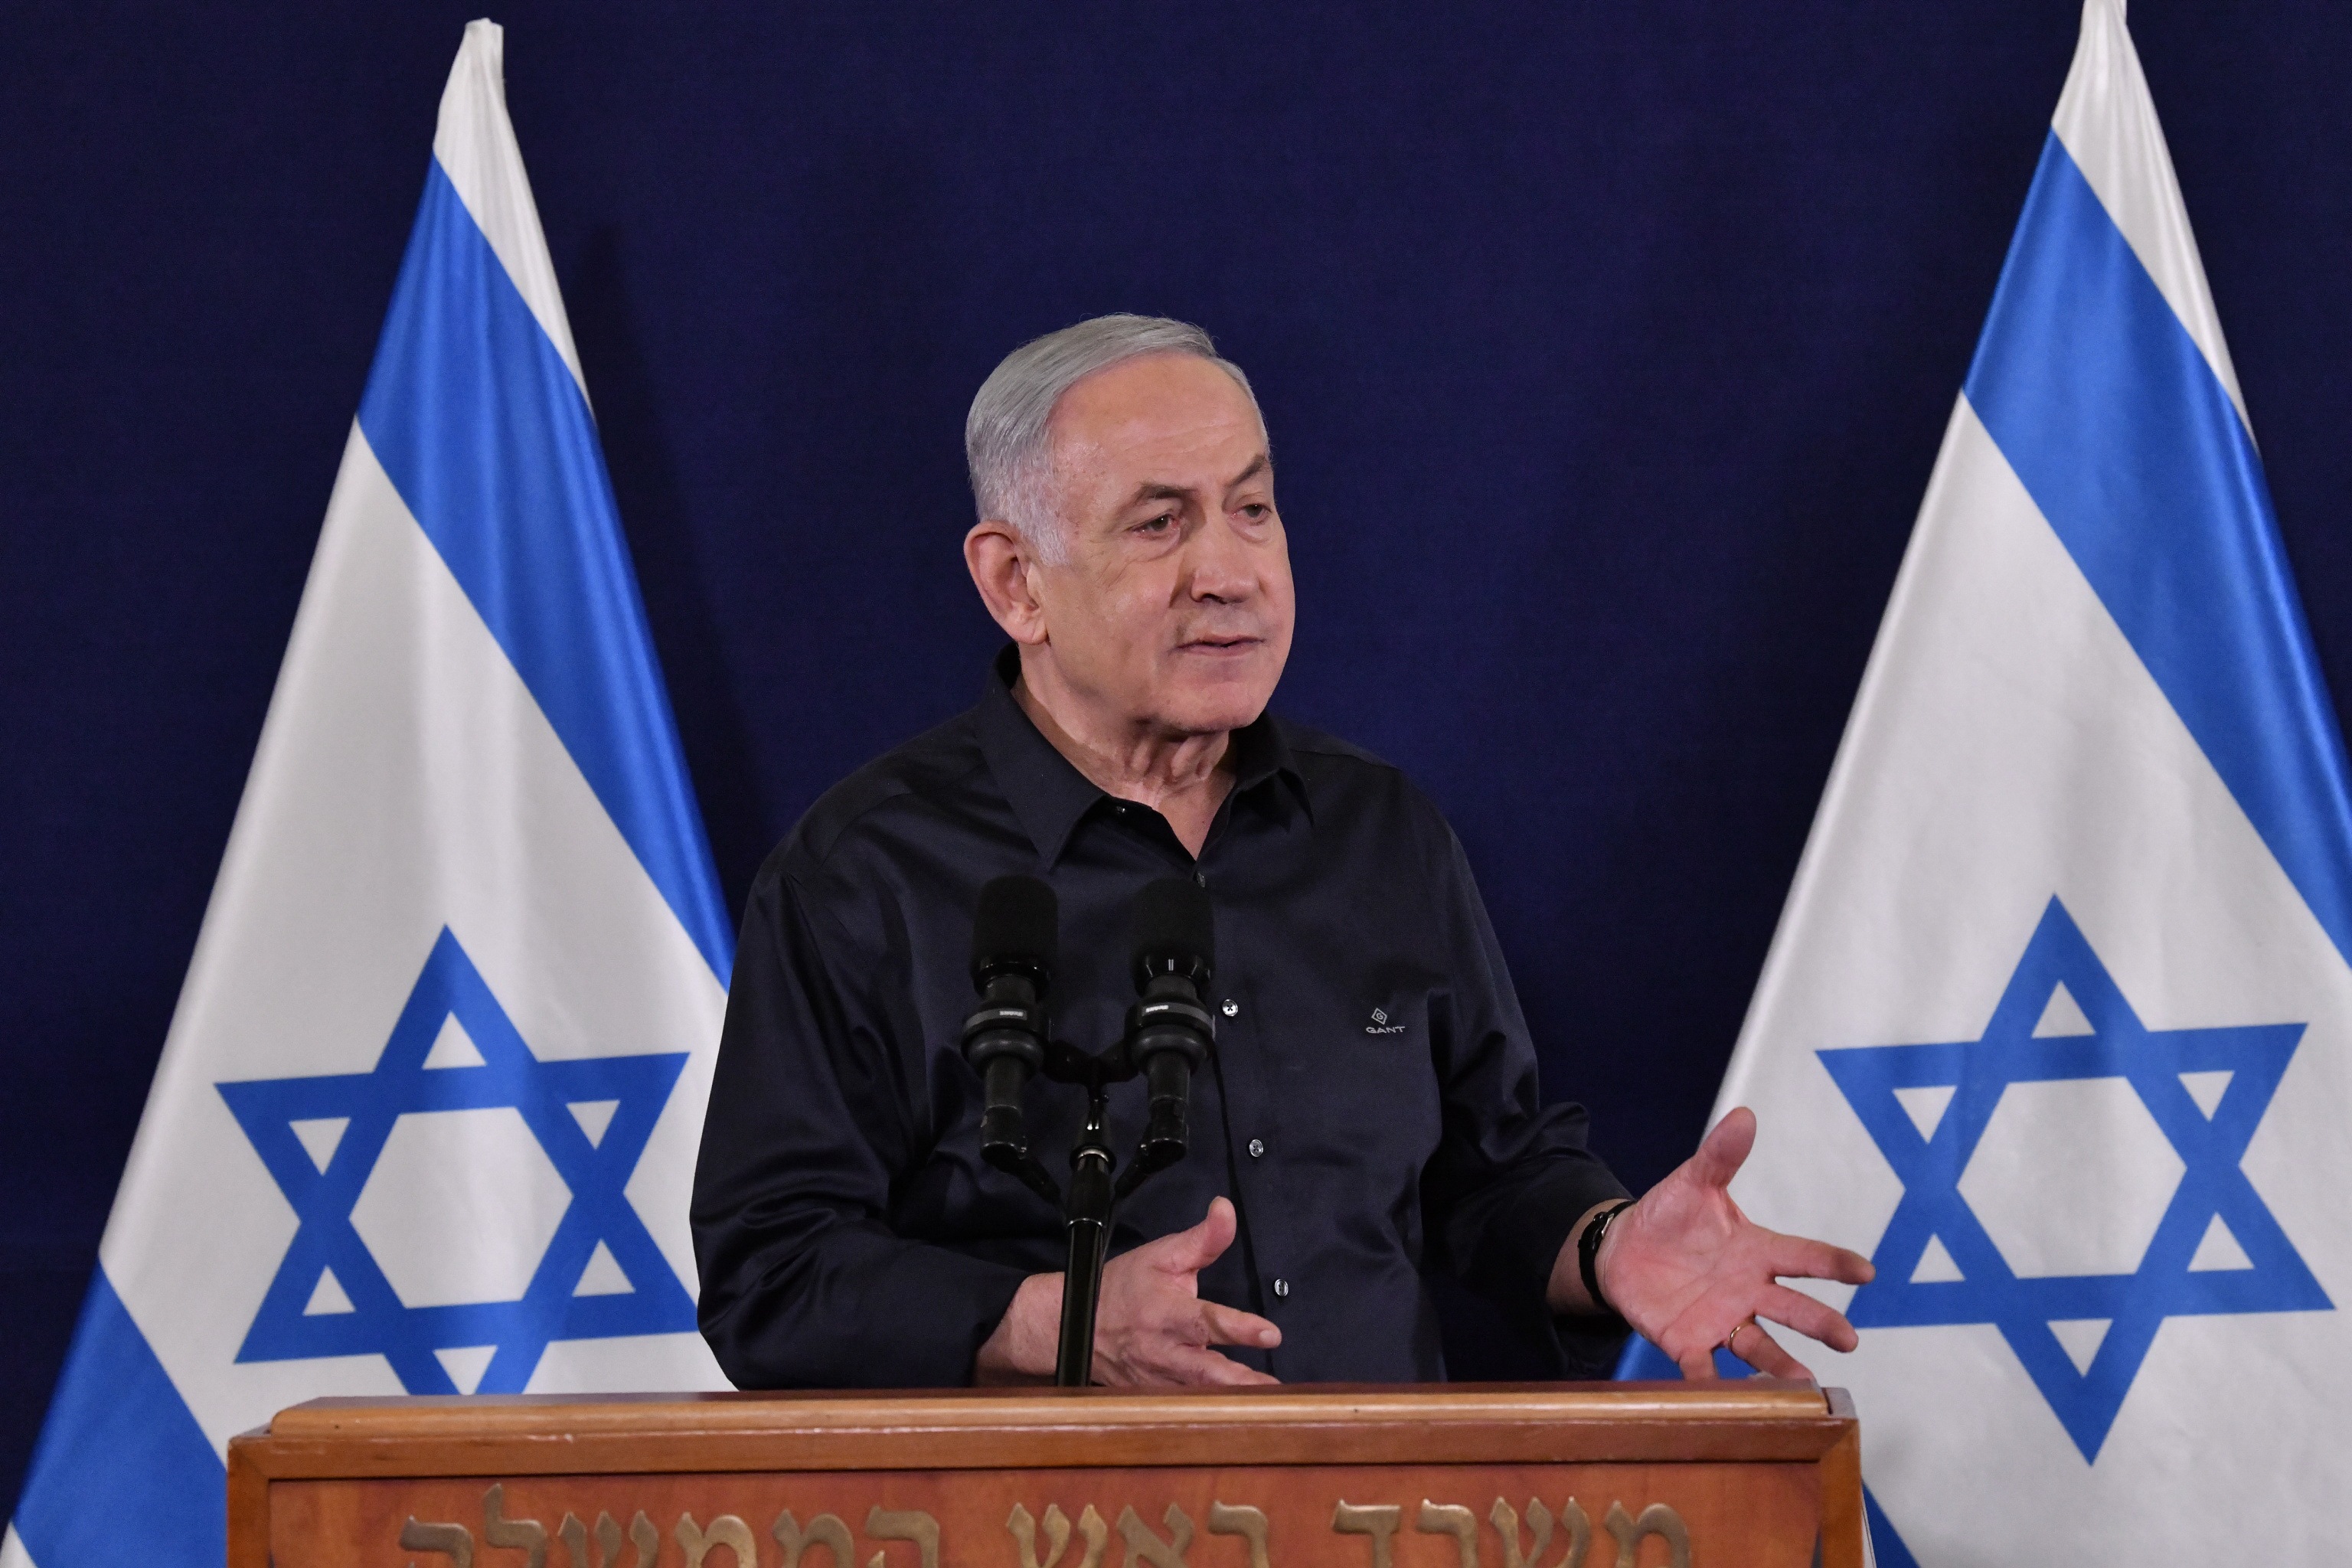 Les famílies dels ostatges pressionen Netanyahu: exigeixen respostes